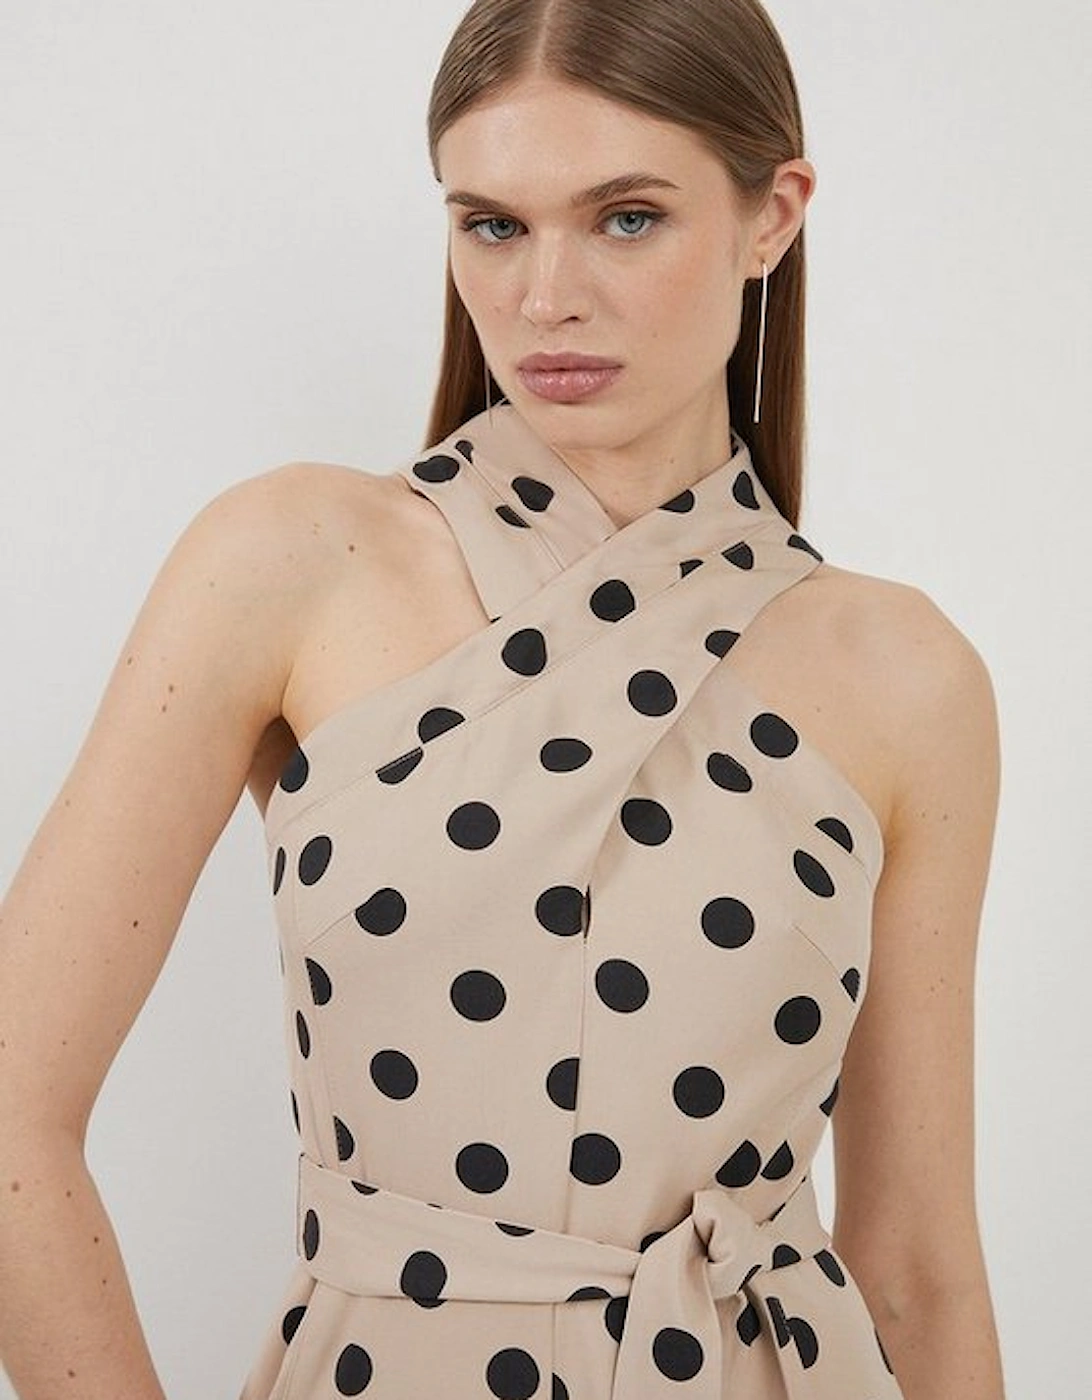 Polka Dot Premium Linen Tailored Halterneck Full Skirted Midi Dress